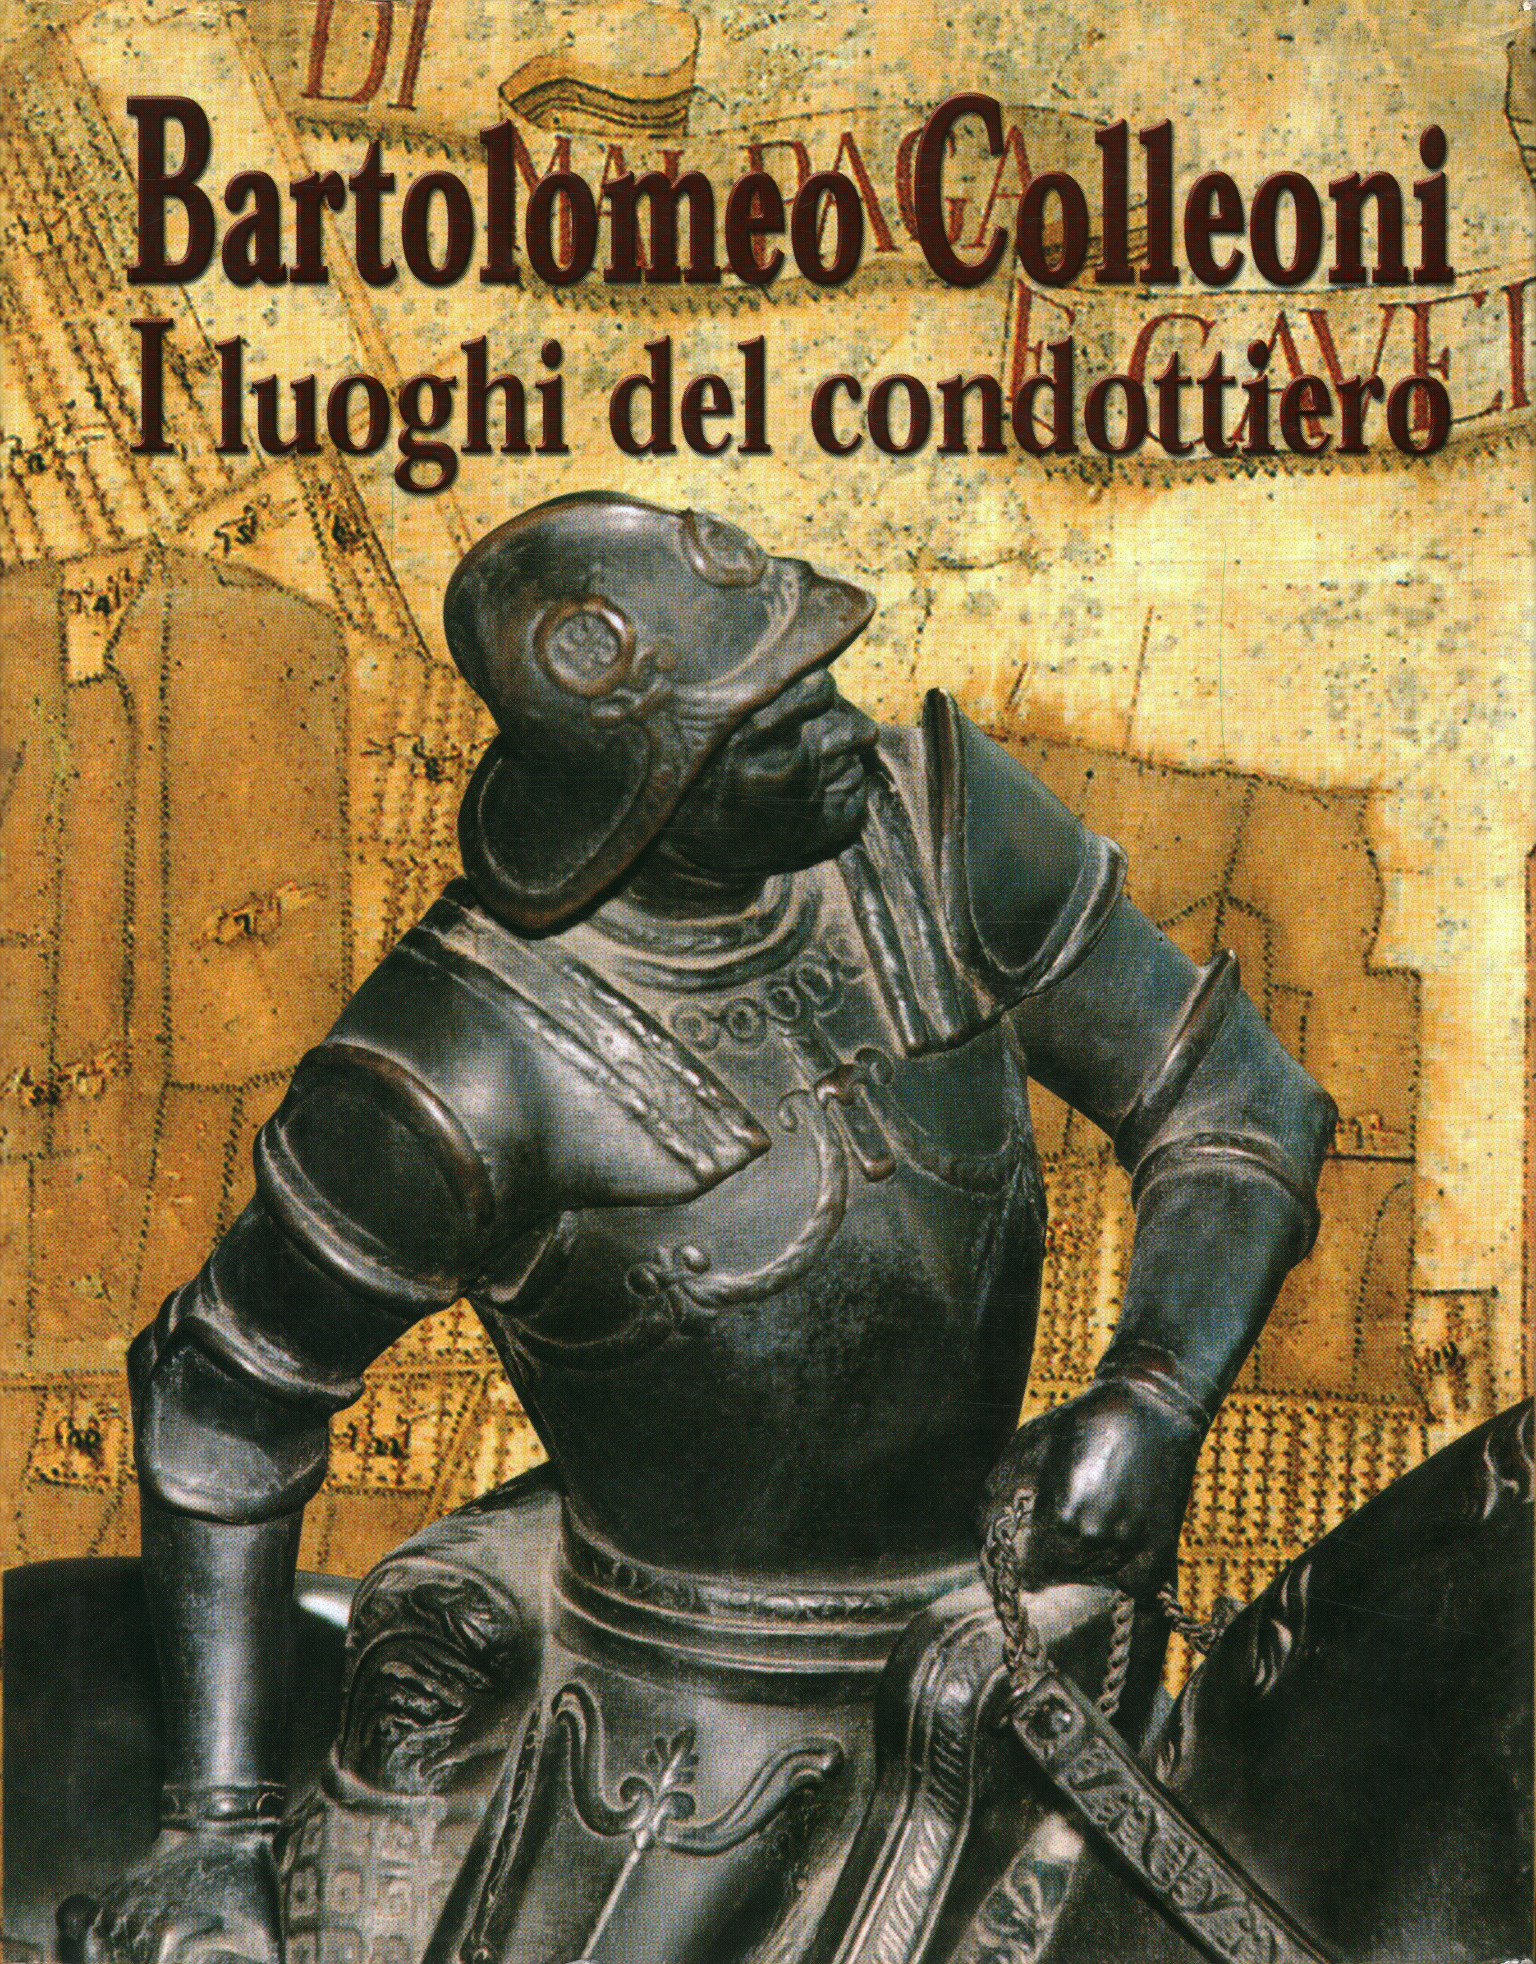 Bartolomeo Colleoni. The places of the condot